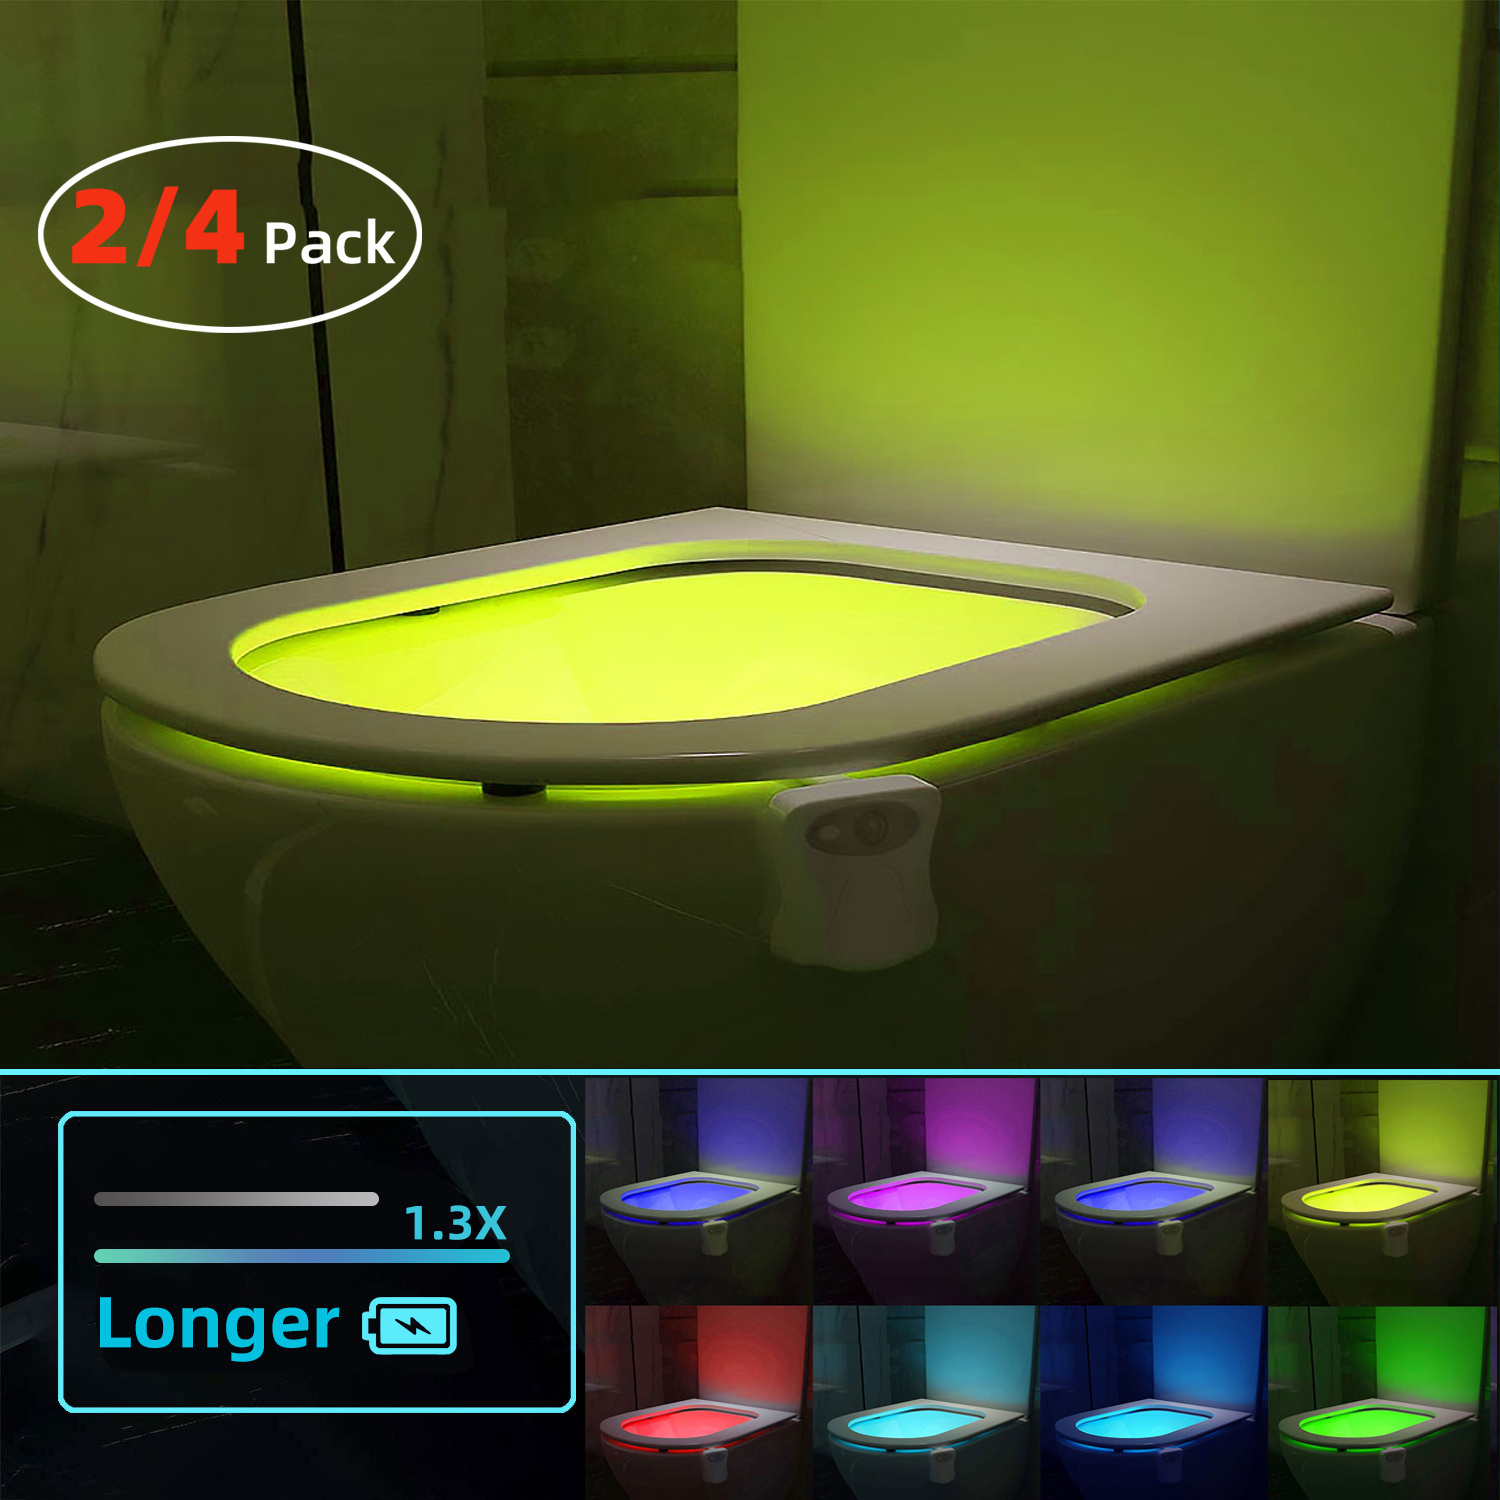 

2 Or 4 Pack 16 Colors Human Motion Sensor Toilet Seat Light Inside Toilet Bathroom Night Light For Toilet Bowl Gift